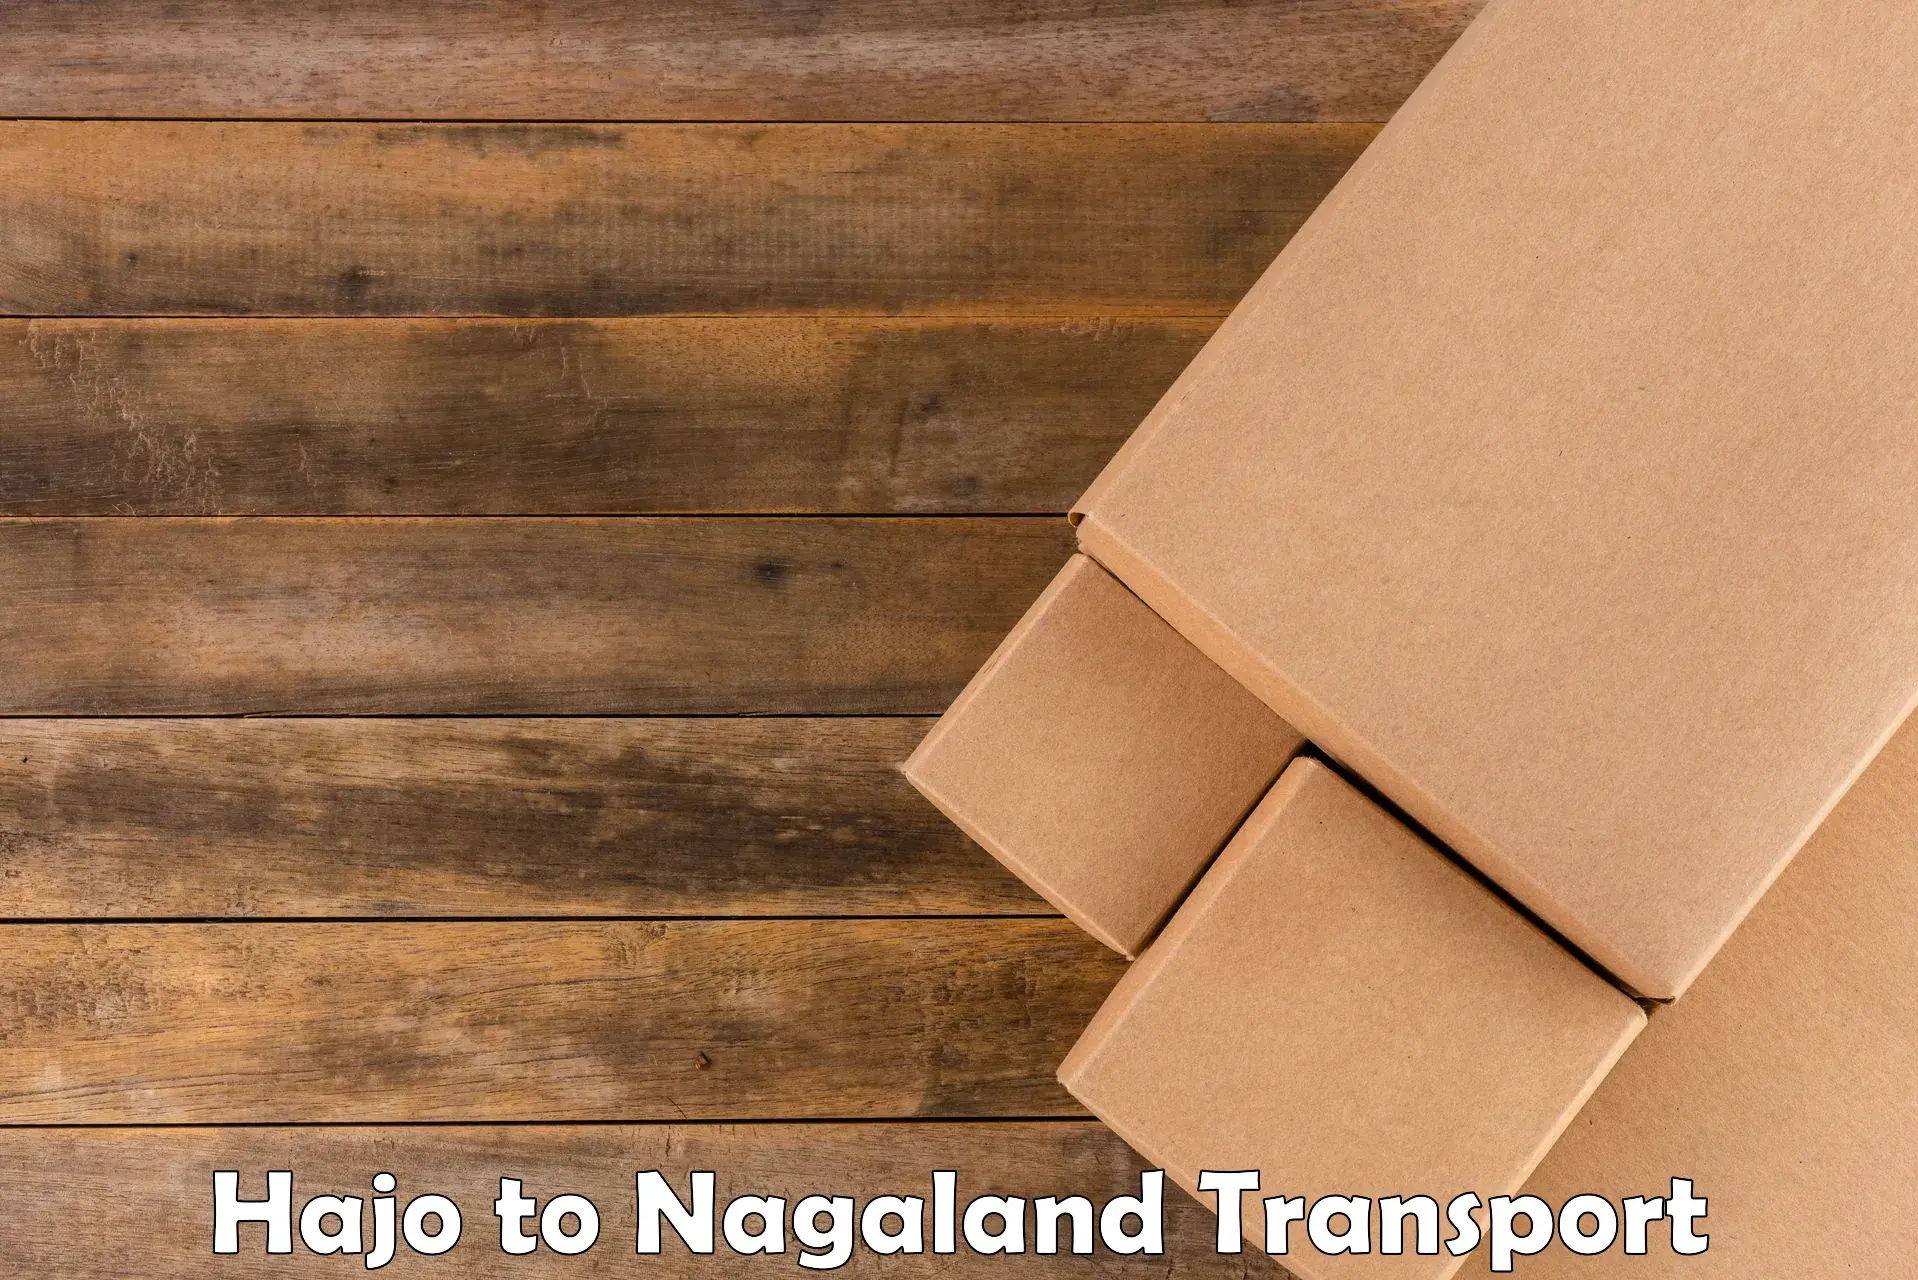 Cargo train transport services Hajo to Nagaland